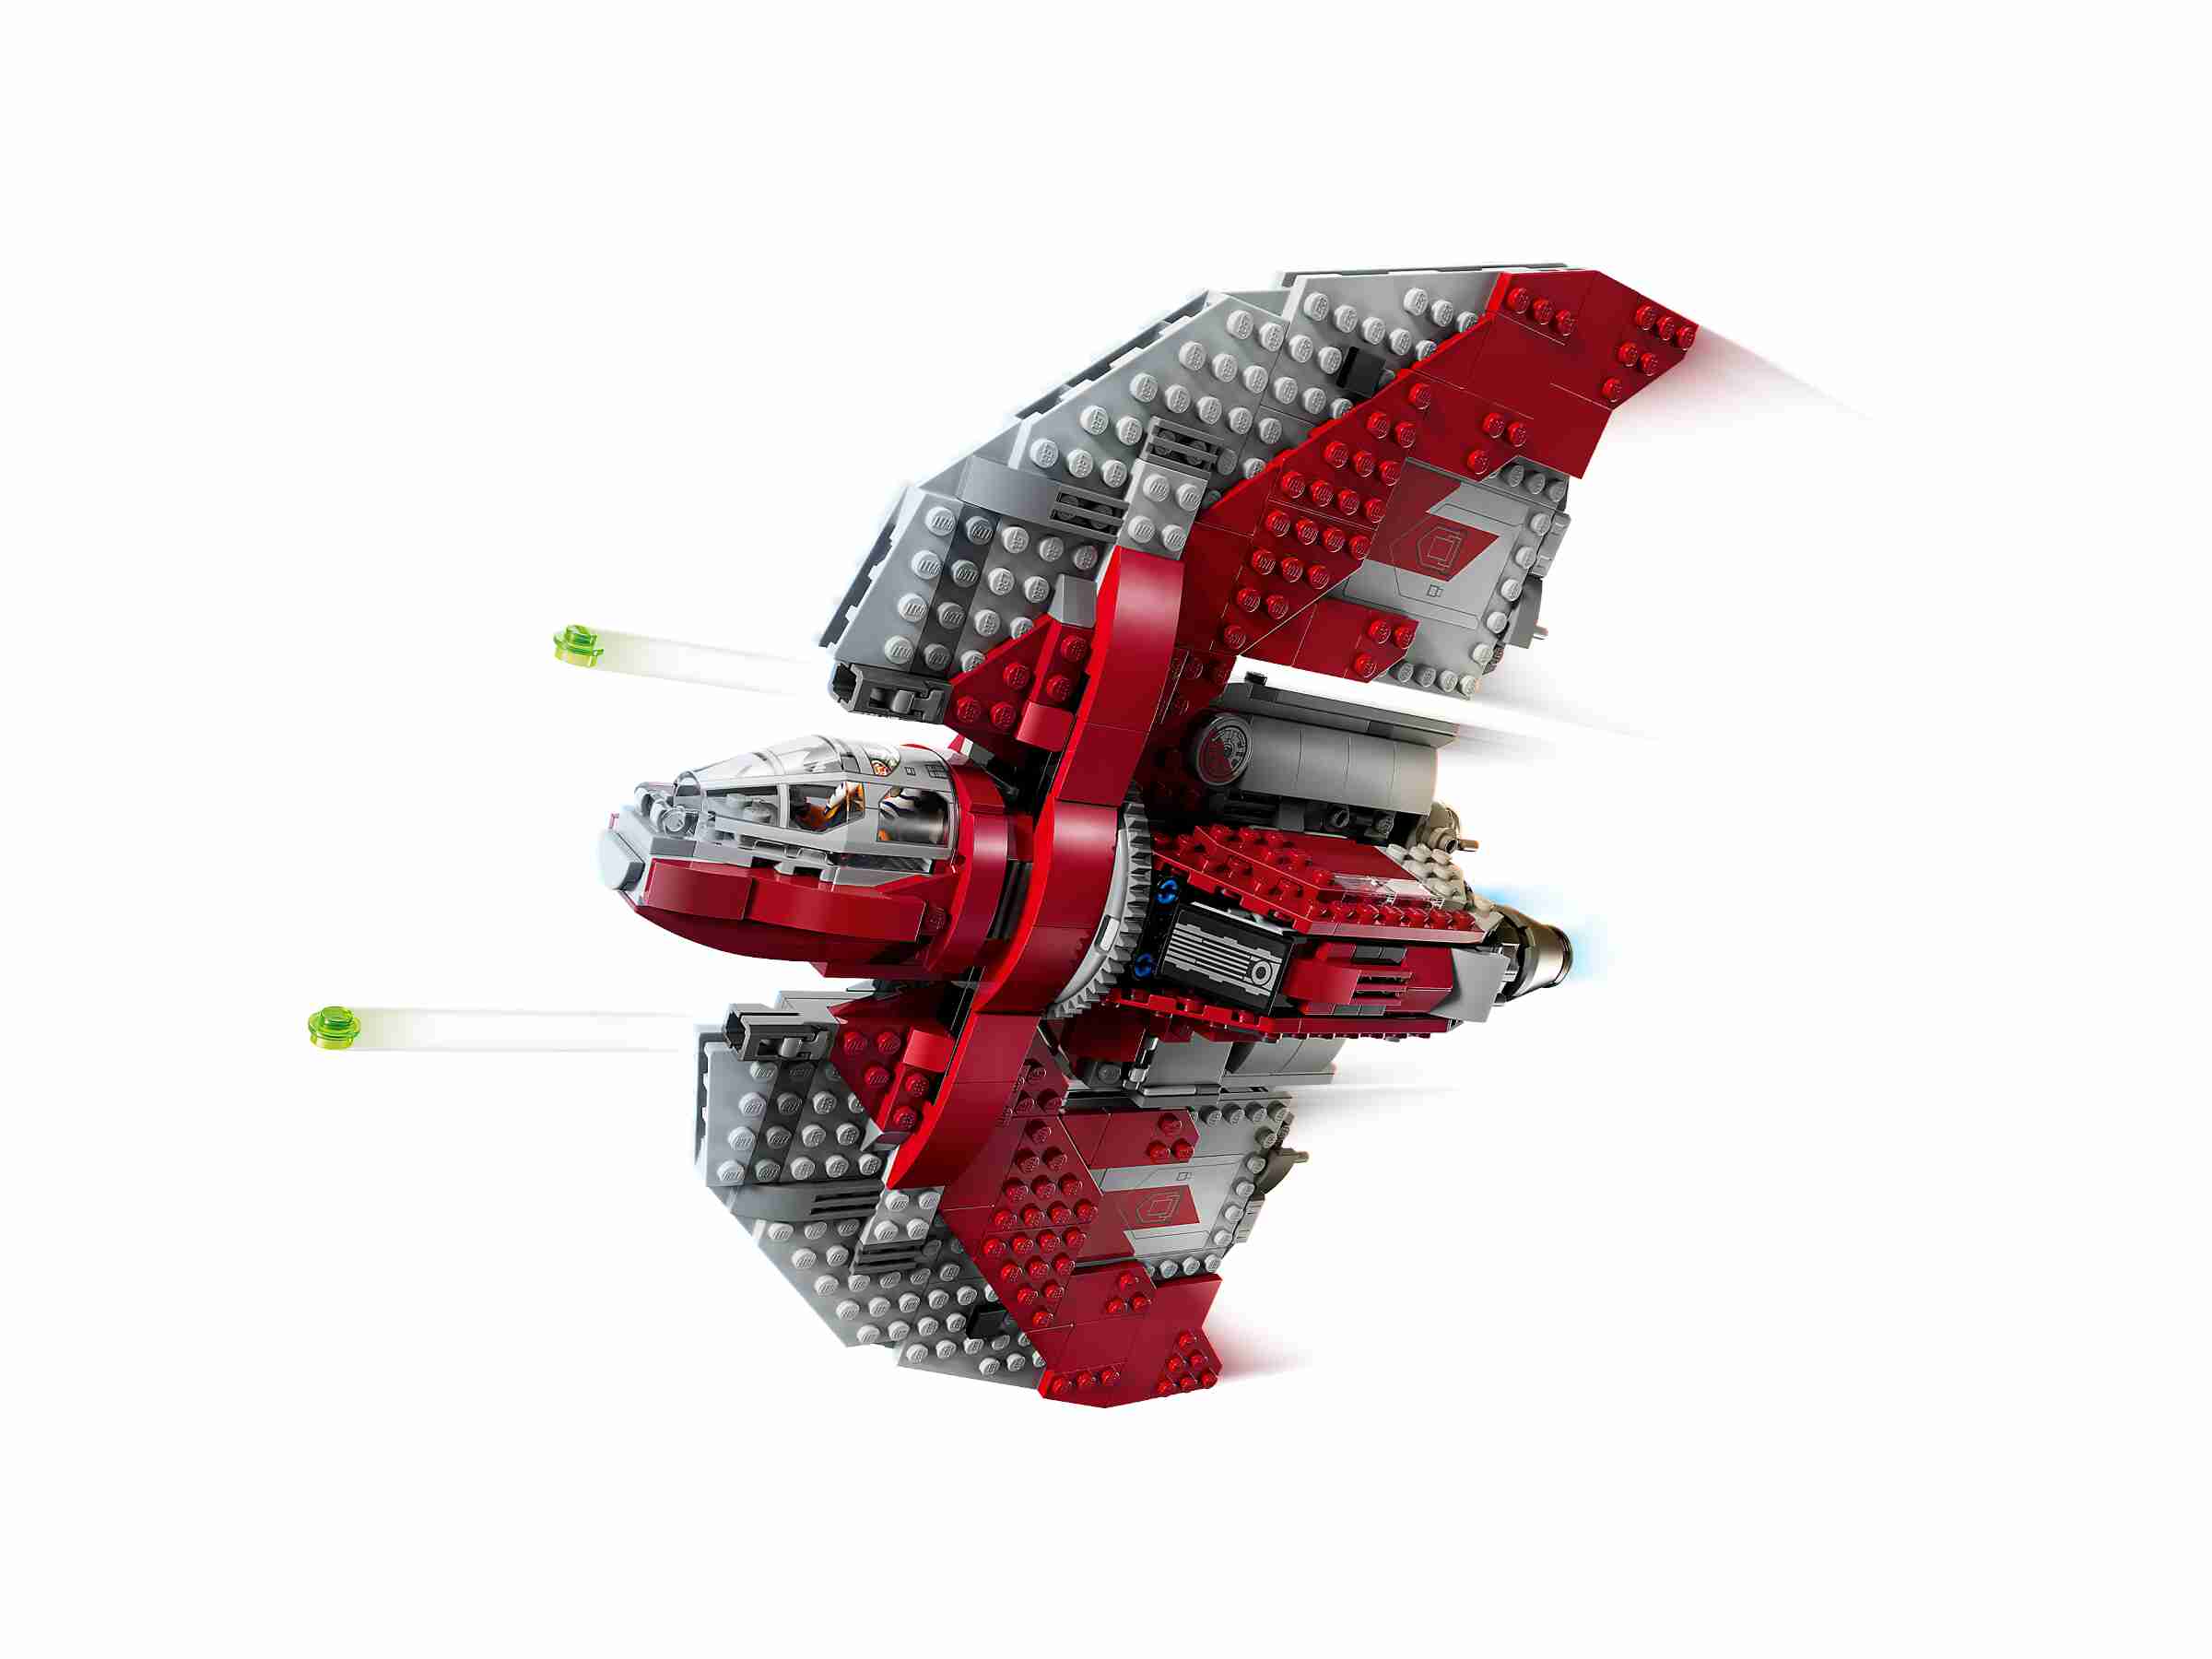 LEGO 75362 Star Wars Ahsoka Tanos T-6 Jedi Shuttle, 4 Minifiguren